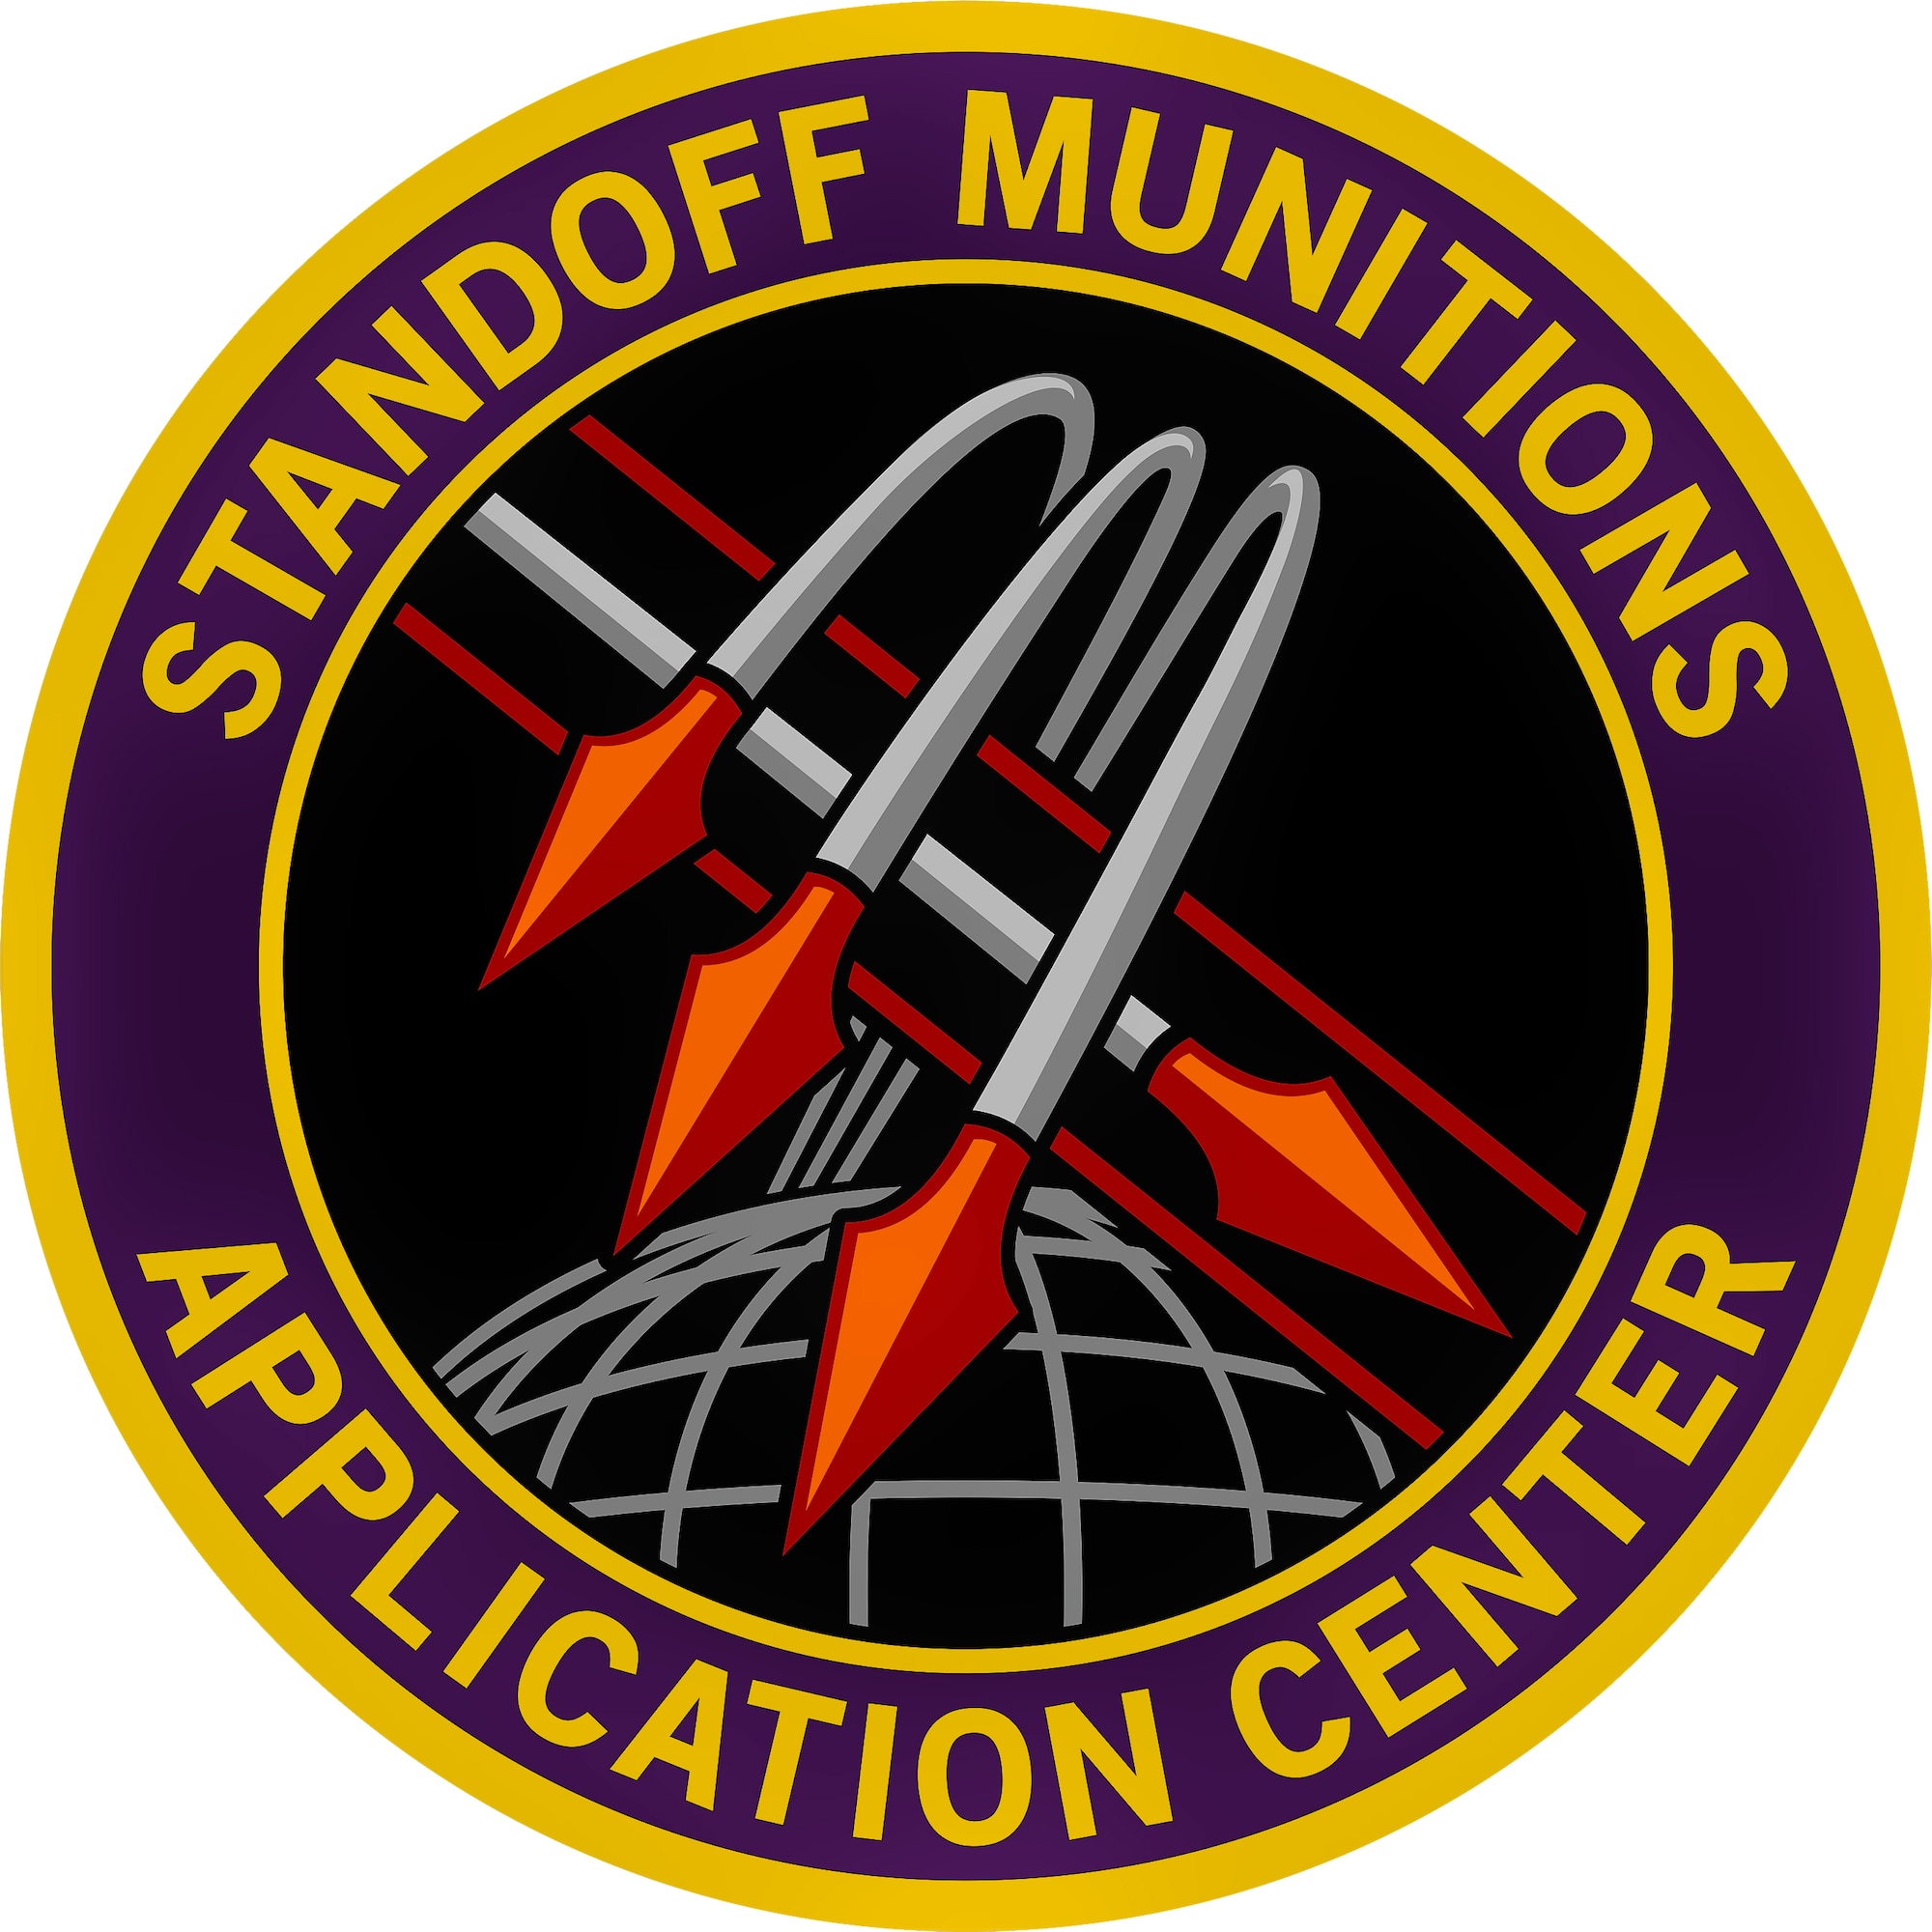 Standoff Munitions Application Center